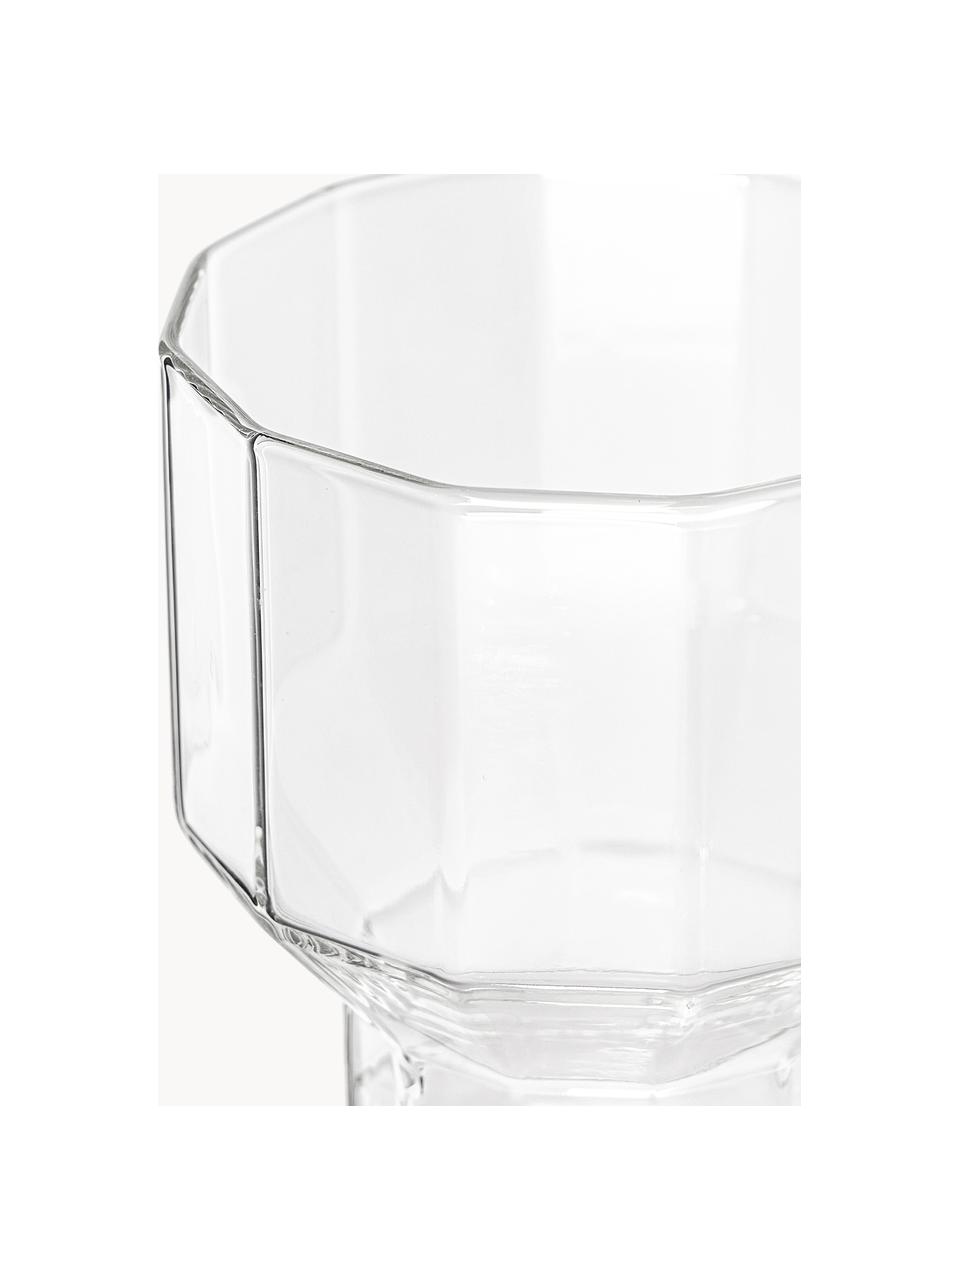 Mundgeblasene Wassergläser Angoli, 4 Stück, Borosilikatglas, mundgeblasen

Entdecke die Vielseitigkeit von Borosilikatglas für Dein Zuhause! Borosilikatglas ist ein hochwertiges, zuverlässiges und robustes Material. Es zeichnet sich durch seine außergewöhnliche Hitzebeständigkeit aus und ist daher ideal für Deinen heißen Tee oder Kaffee. Im Vergleich zu herkömmlichem Glas ist Borosilikatglas widerstandsfähiger gegen Brüche und Risse und somit ein sicherer Begleiter in Deinem Zuhause., Transparent, Ø 9 cm x H 9 cm, 360 ml